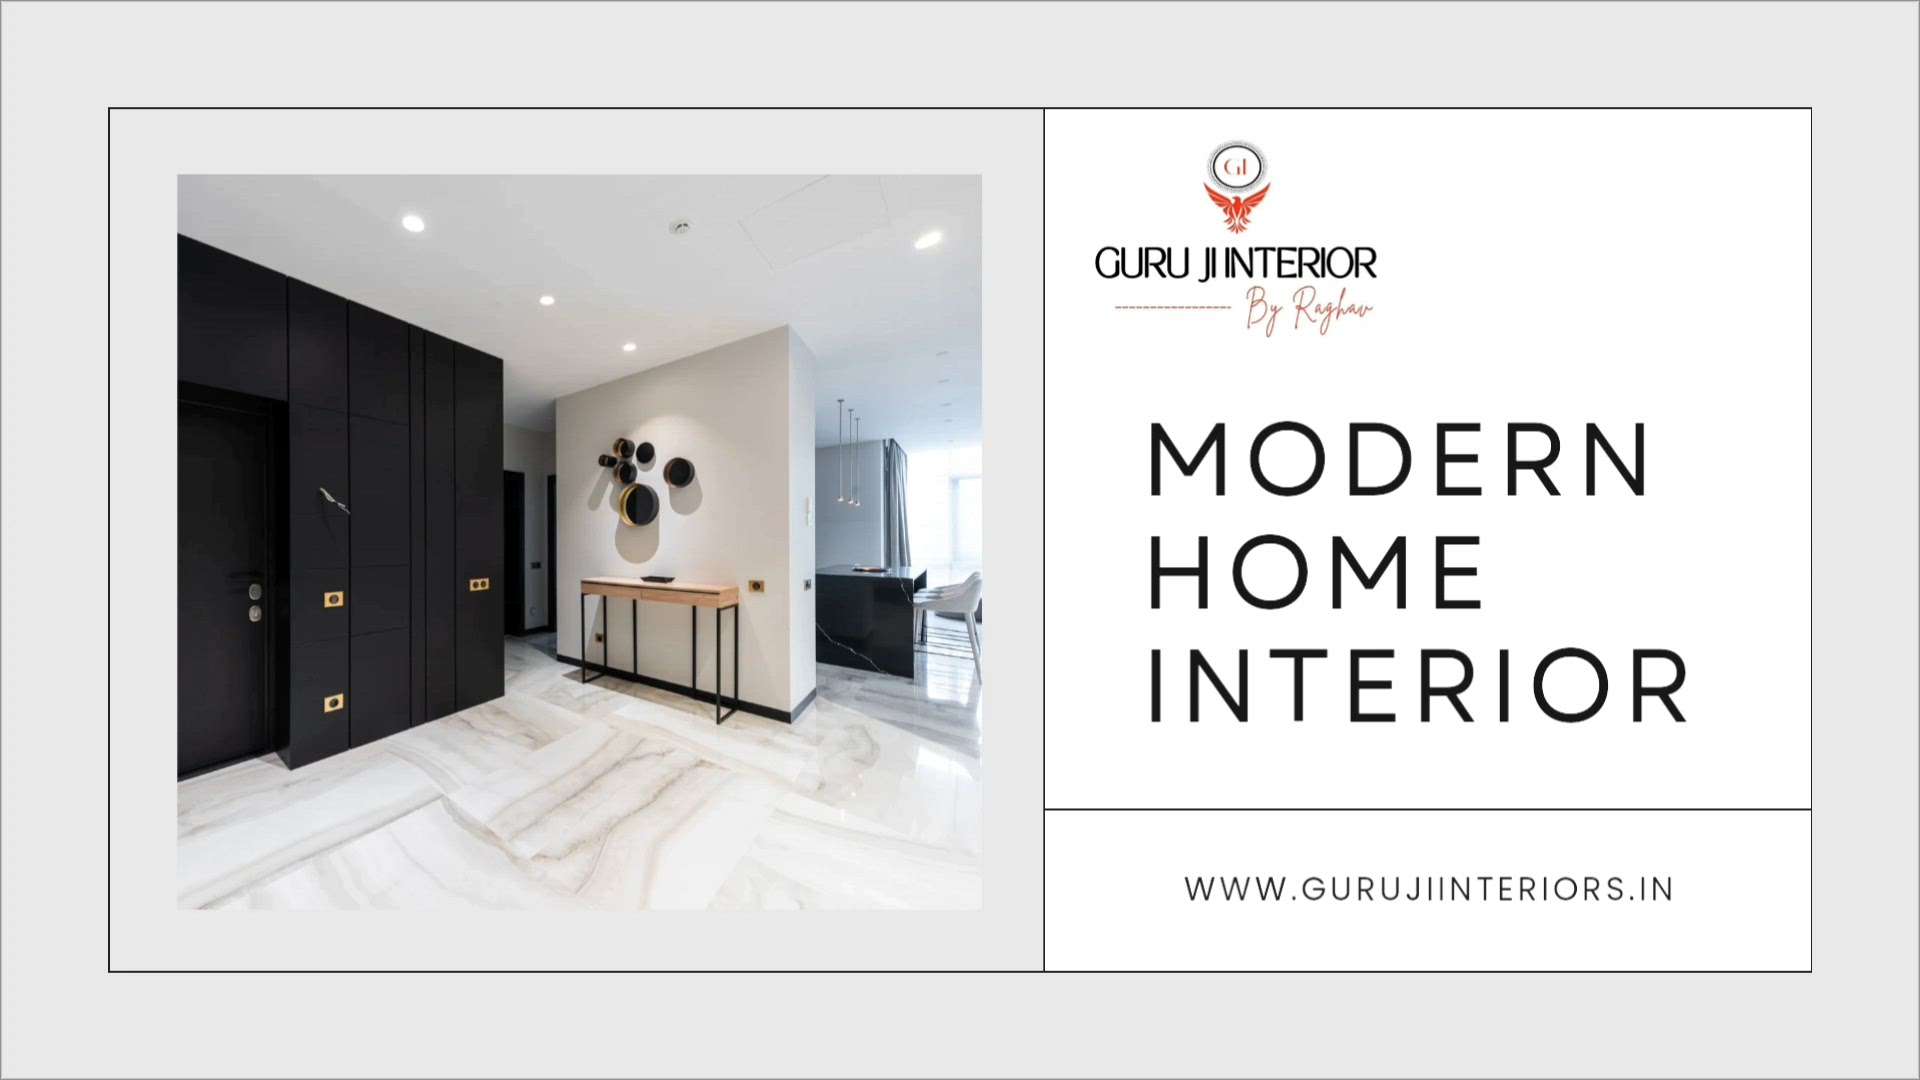 MODERN HOME INTERIOR 
@ Get Lowest price &  best quality home interior 💫
.
Guru ji interior
By Raghav
Call - 9870533947

#gurujiinteriors
#homeinterior 
#luxuryhomes 
#homedecore 
#Interiordesign